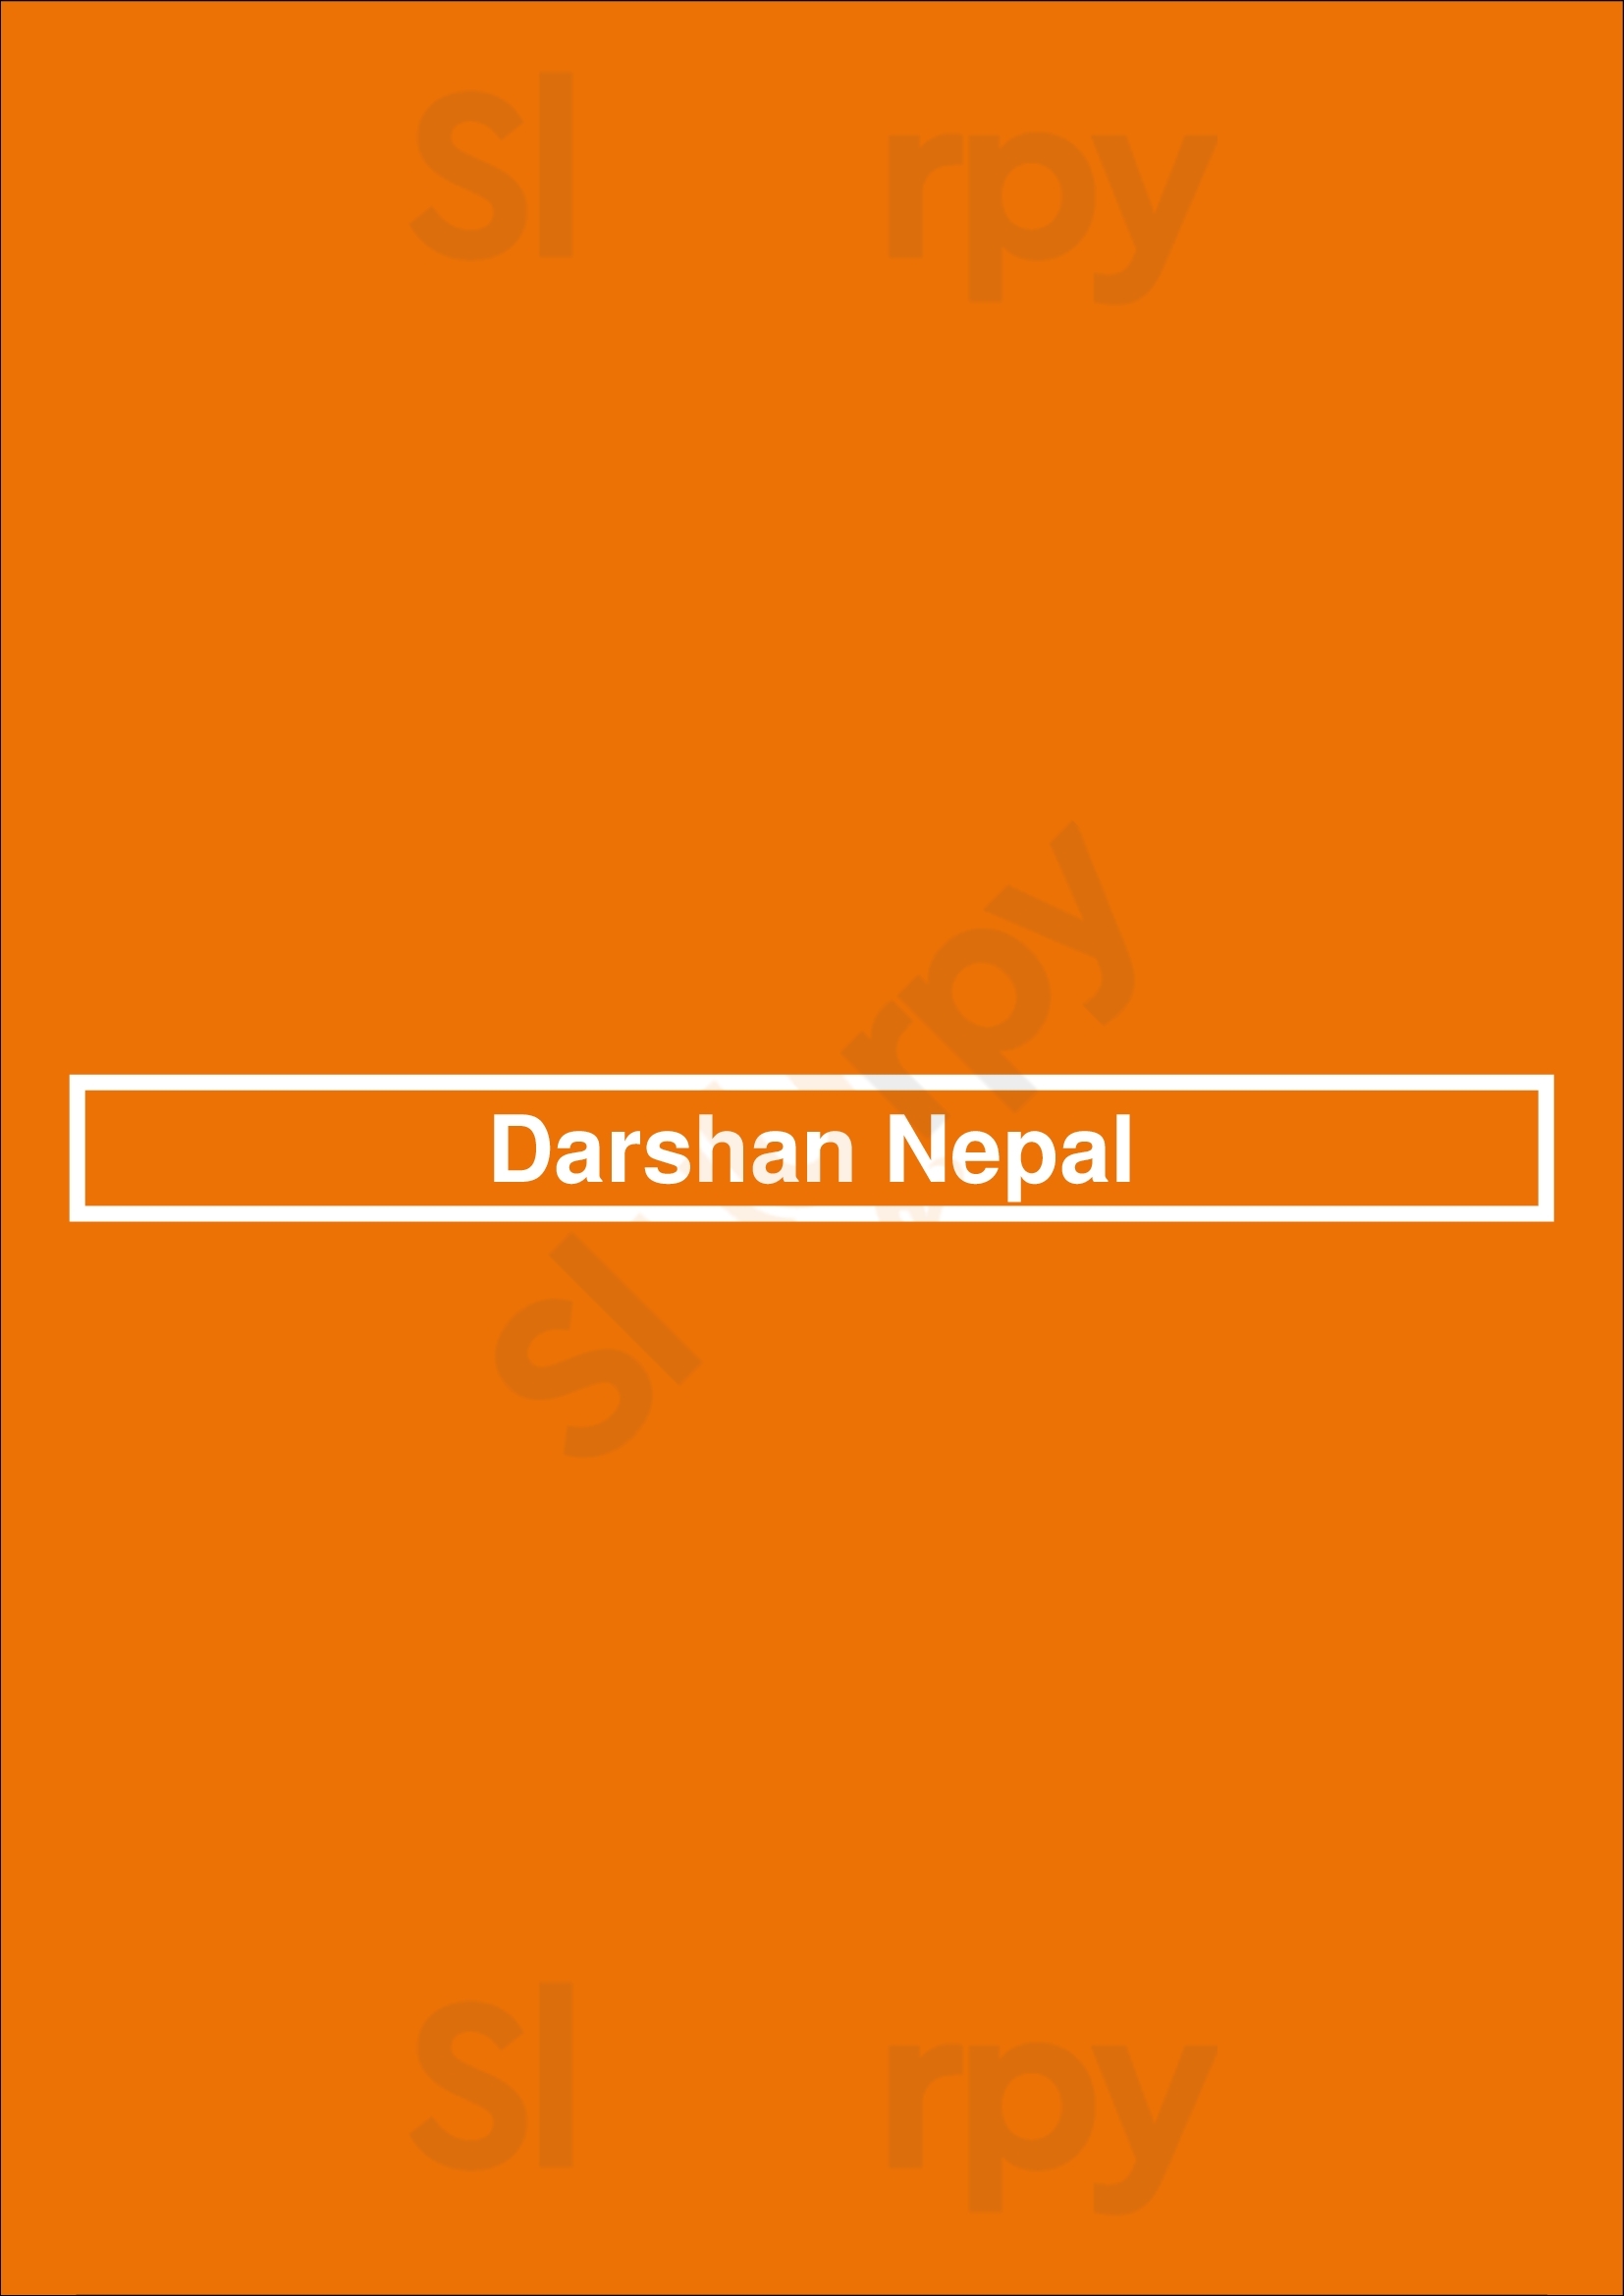 Darshan Nepal Lisboa Menu - 1